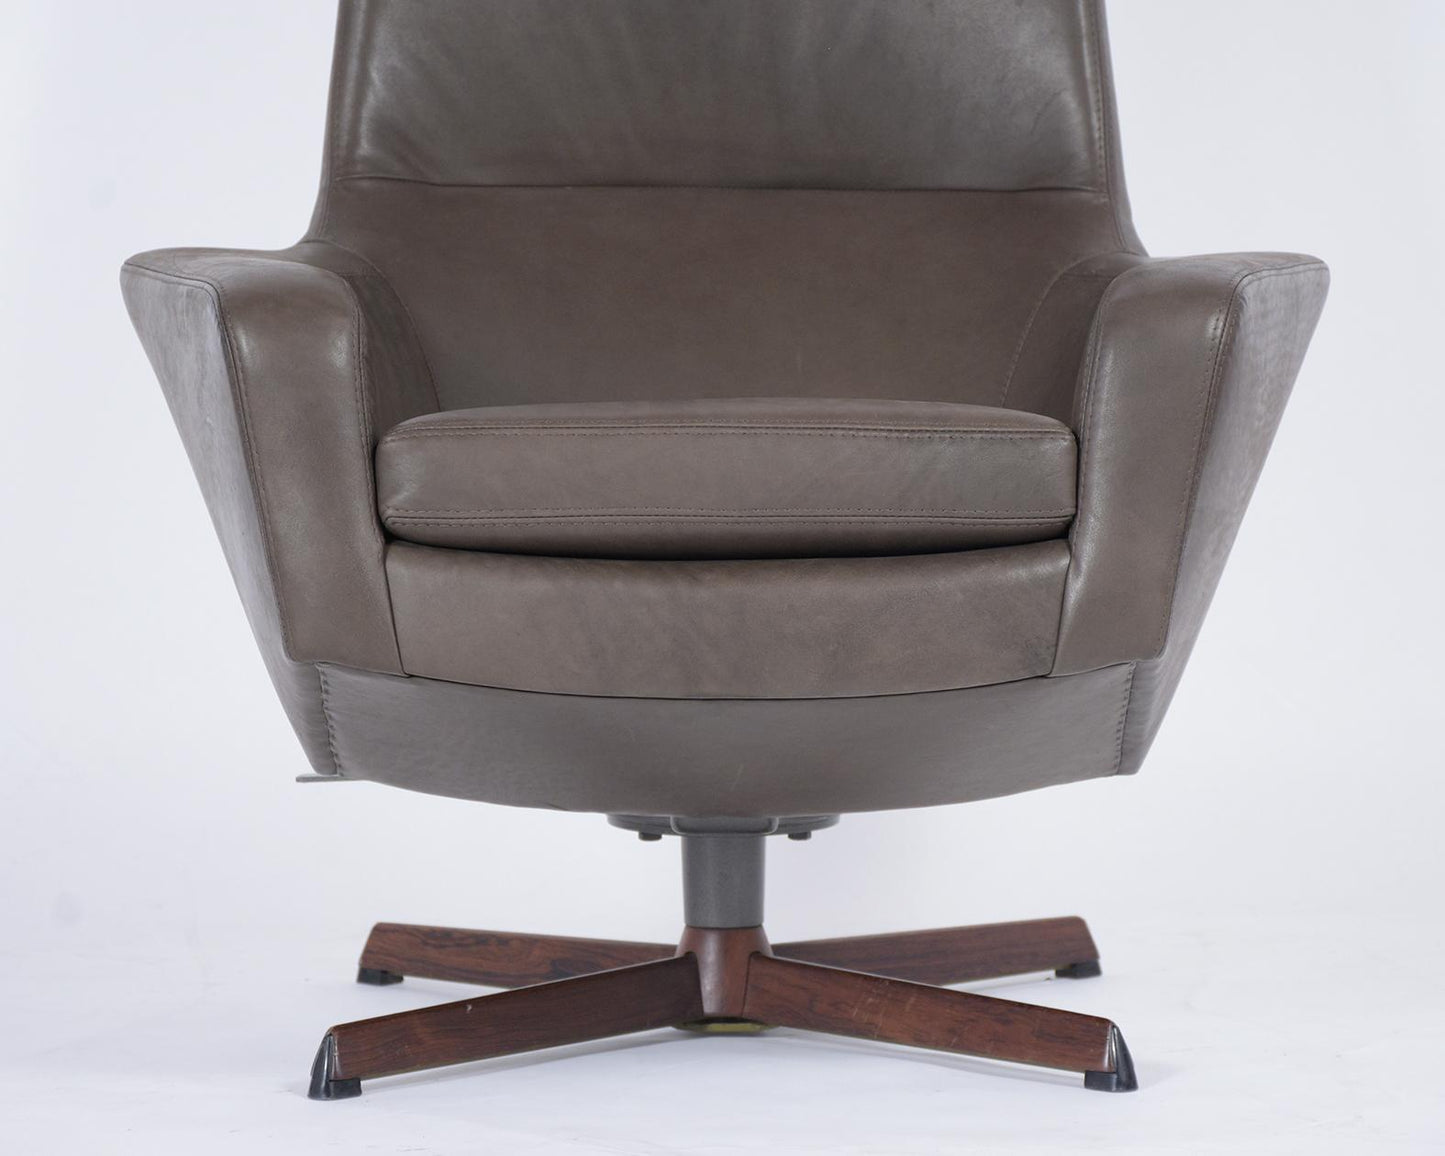 Kofod Larsen Lounge Chair and Ottoman